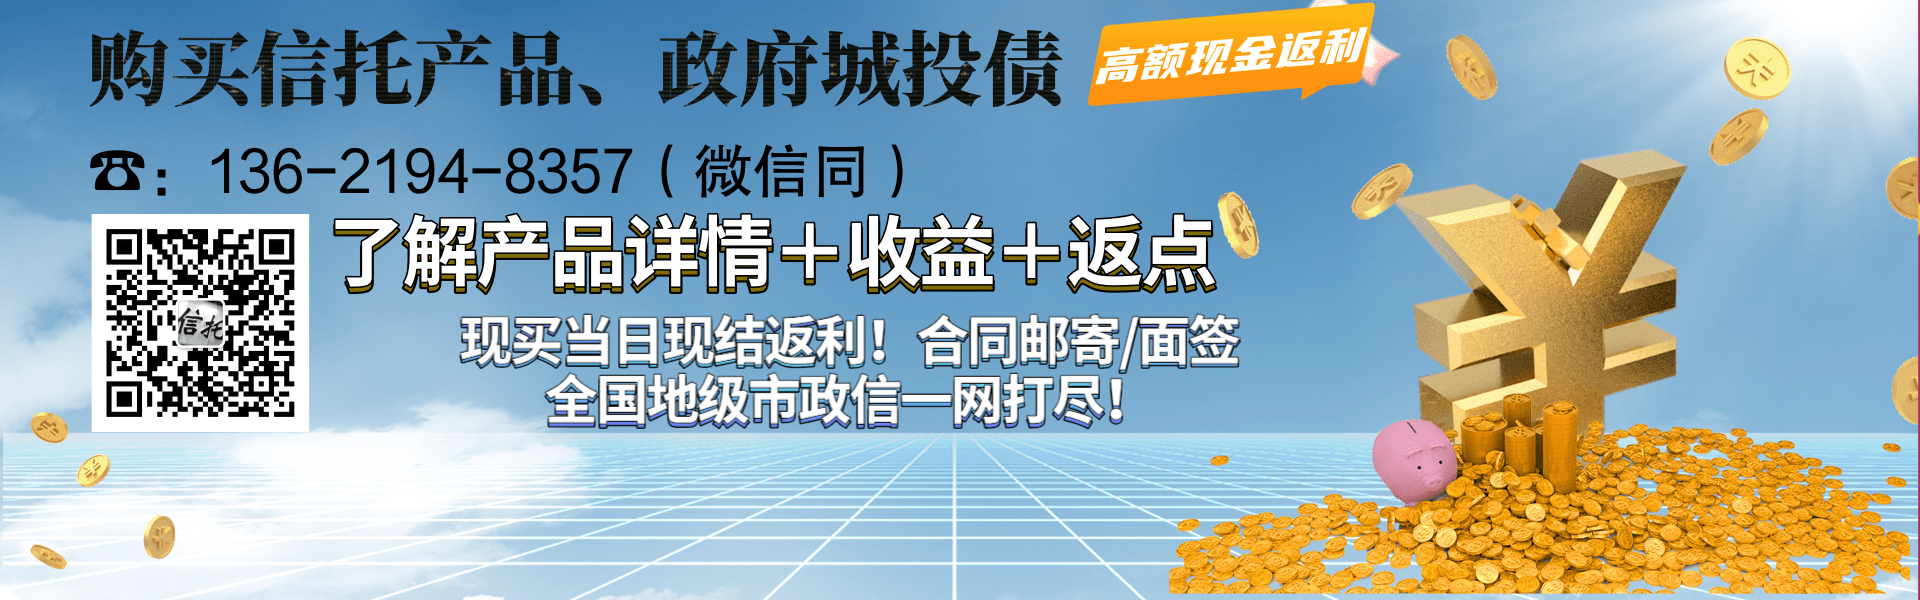 潍坊滨海新城公有资产经营管理2021年债权1期